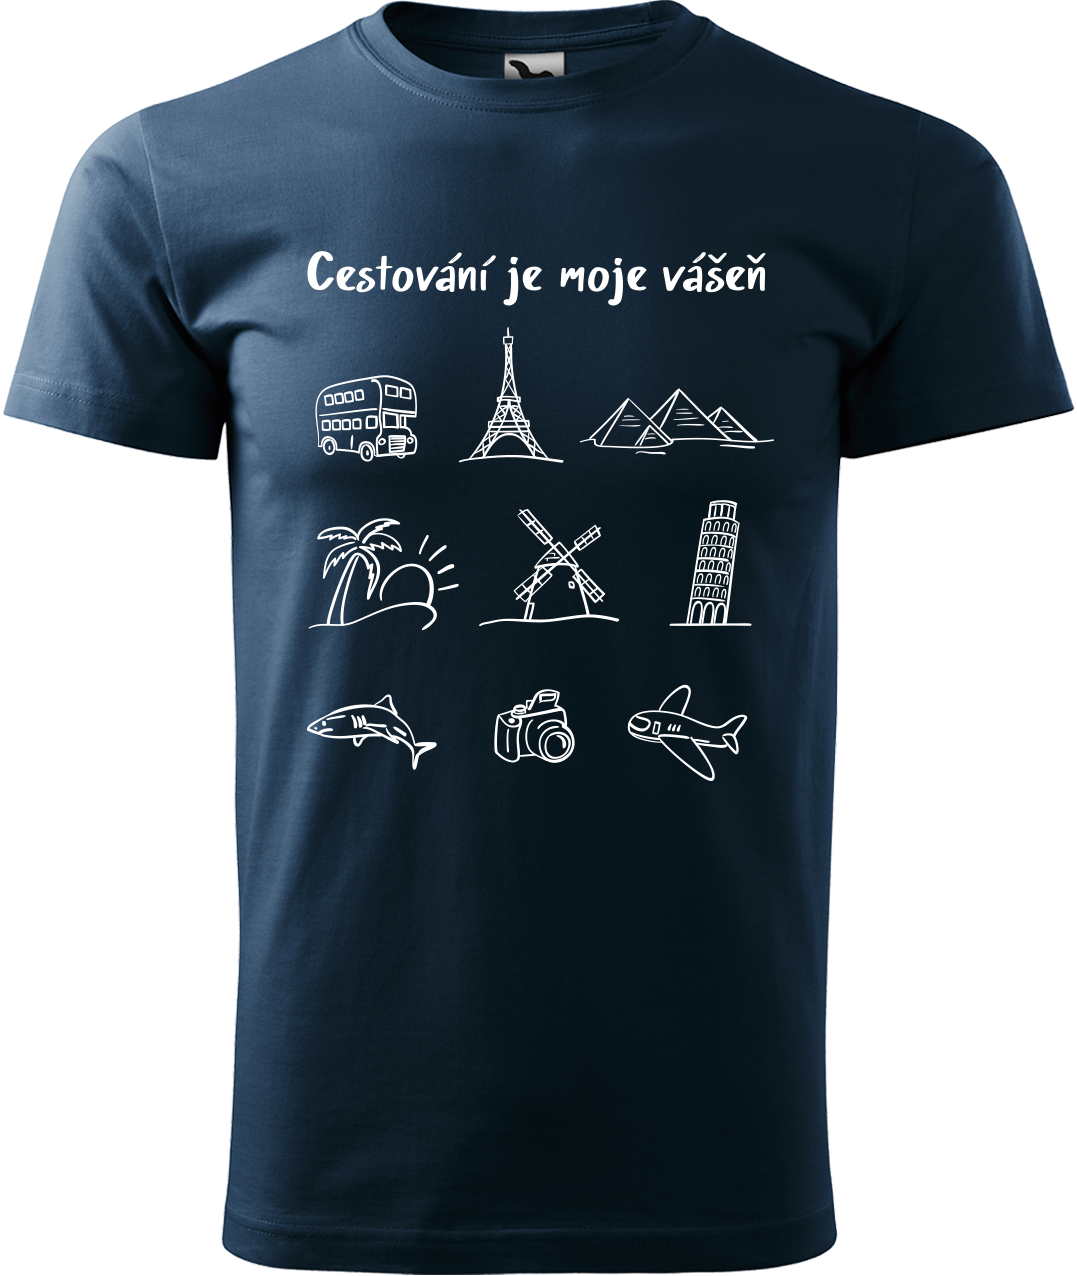 Pánské cestovatelské tričko - Cestování je moje vášeň Velikost: L, Barva: Námořní modrá (02)